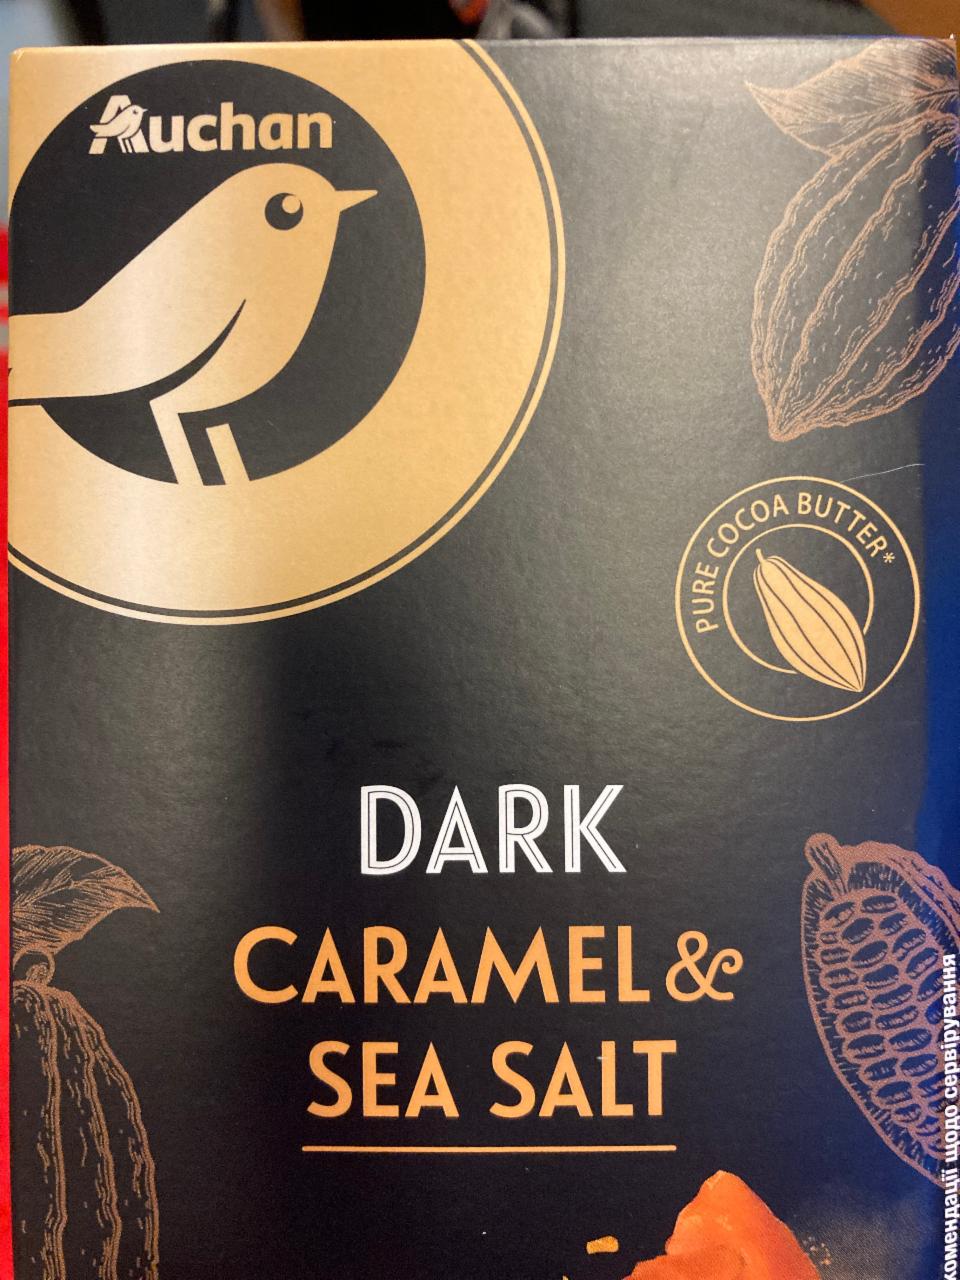 Fotografie - Dark caramel & sea salt Auchan